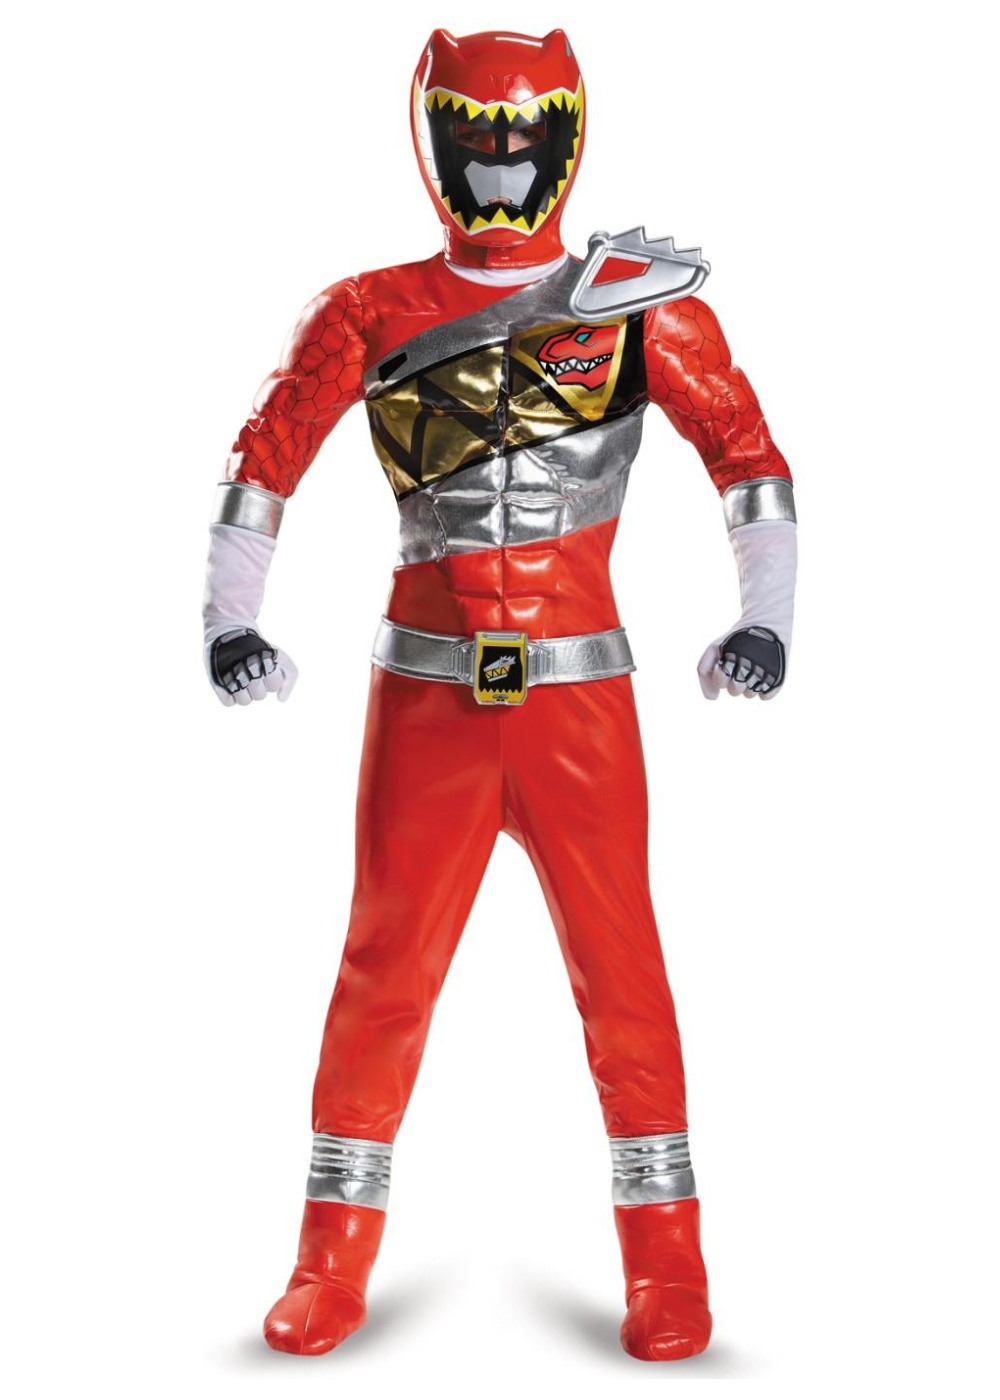  Boys Red Power Ranger Costume